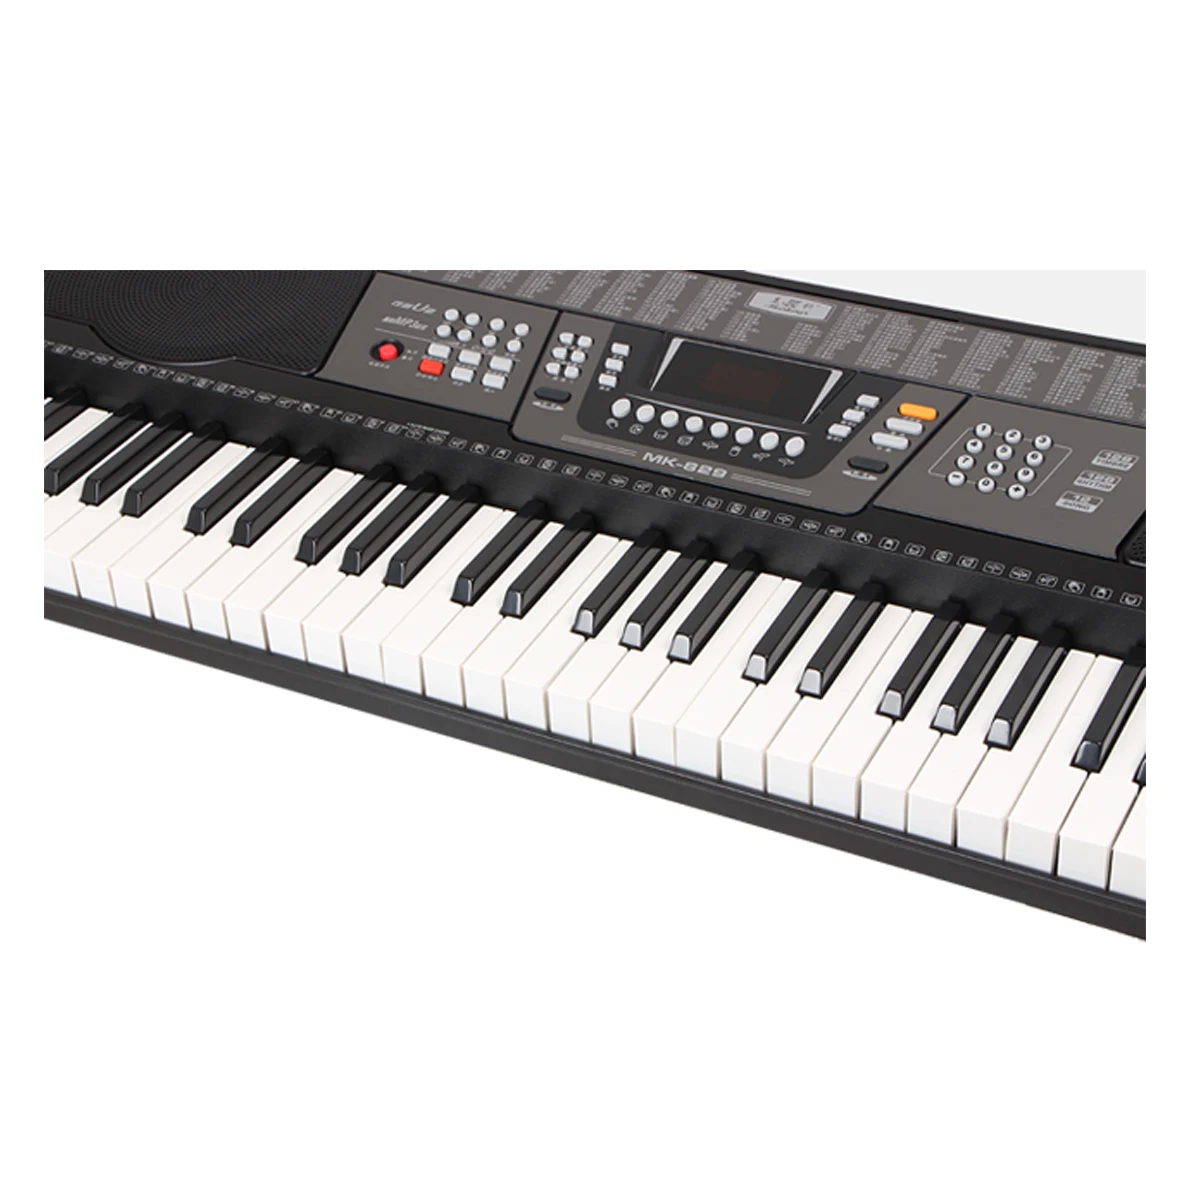 Оптовая цена, высокое качество, светодиодный экран, 128 тембров/ритм, 61 клавиша, электронная клавиатура для пианино, регулируемая клавиатура для пианино